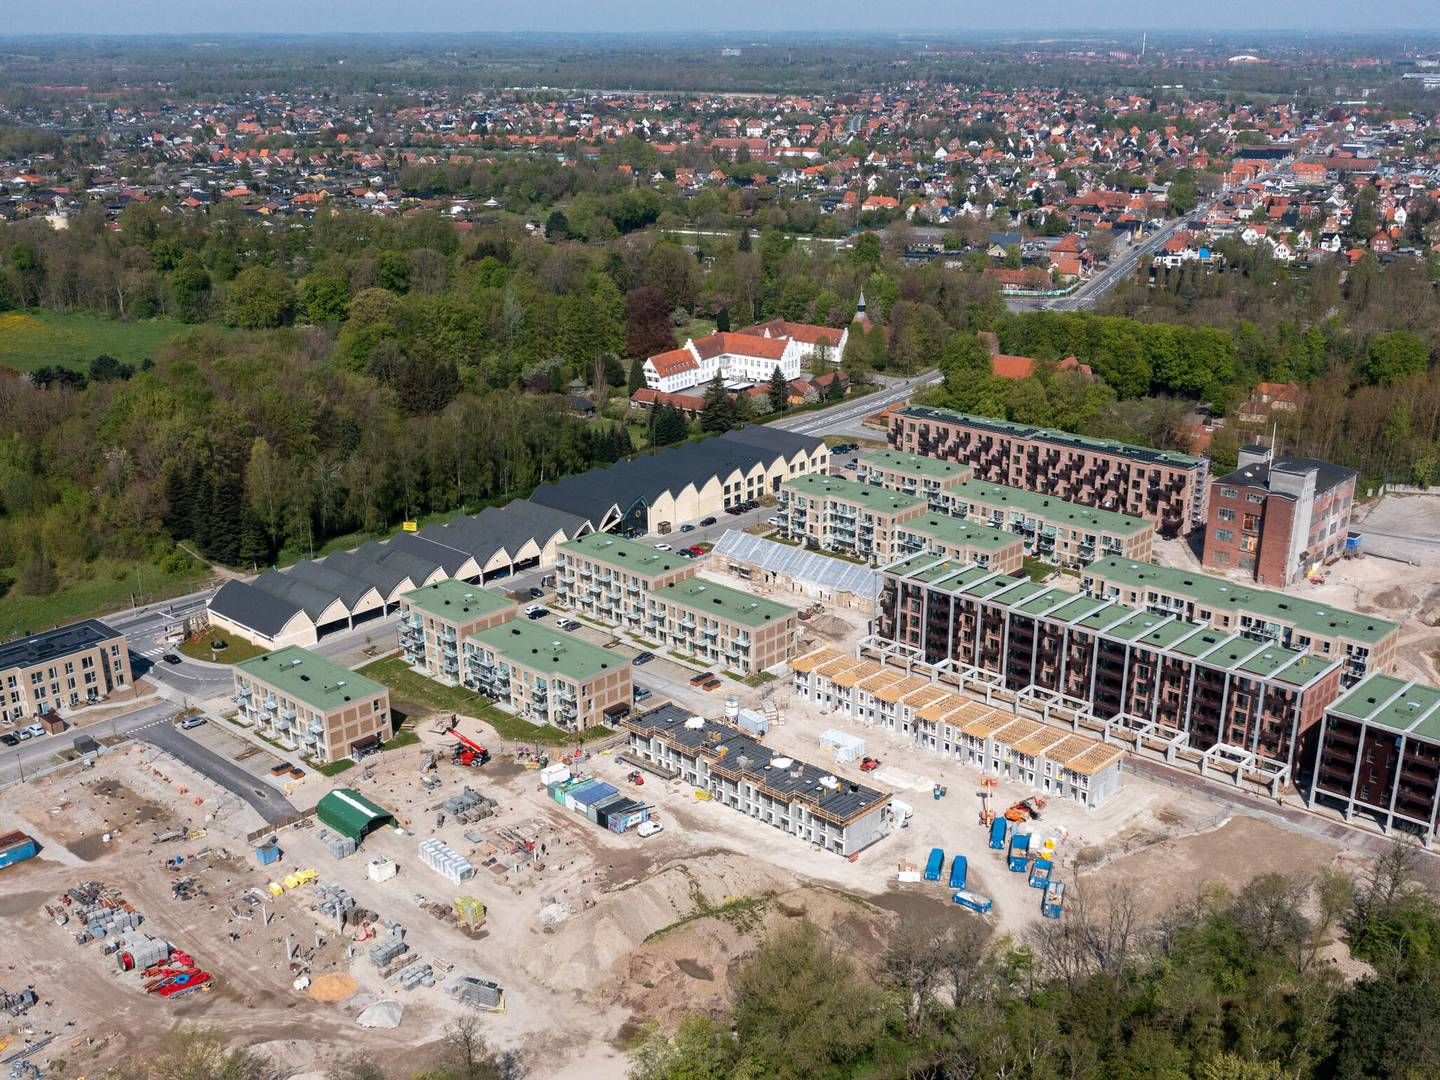 Produktionen på Dalum Papirfabrik blev indstillet i 2012. Den nye bydel på grunden kommer til at bestå af nybyggede boliger og dele af den eksisterende bygningsmasse. | Foto: PR / MT Højgaard Property Development